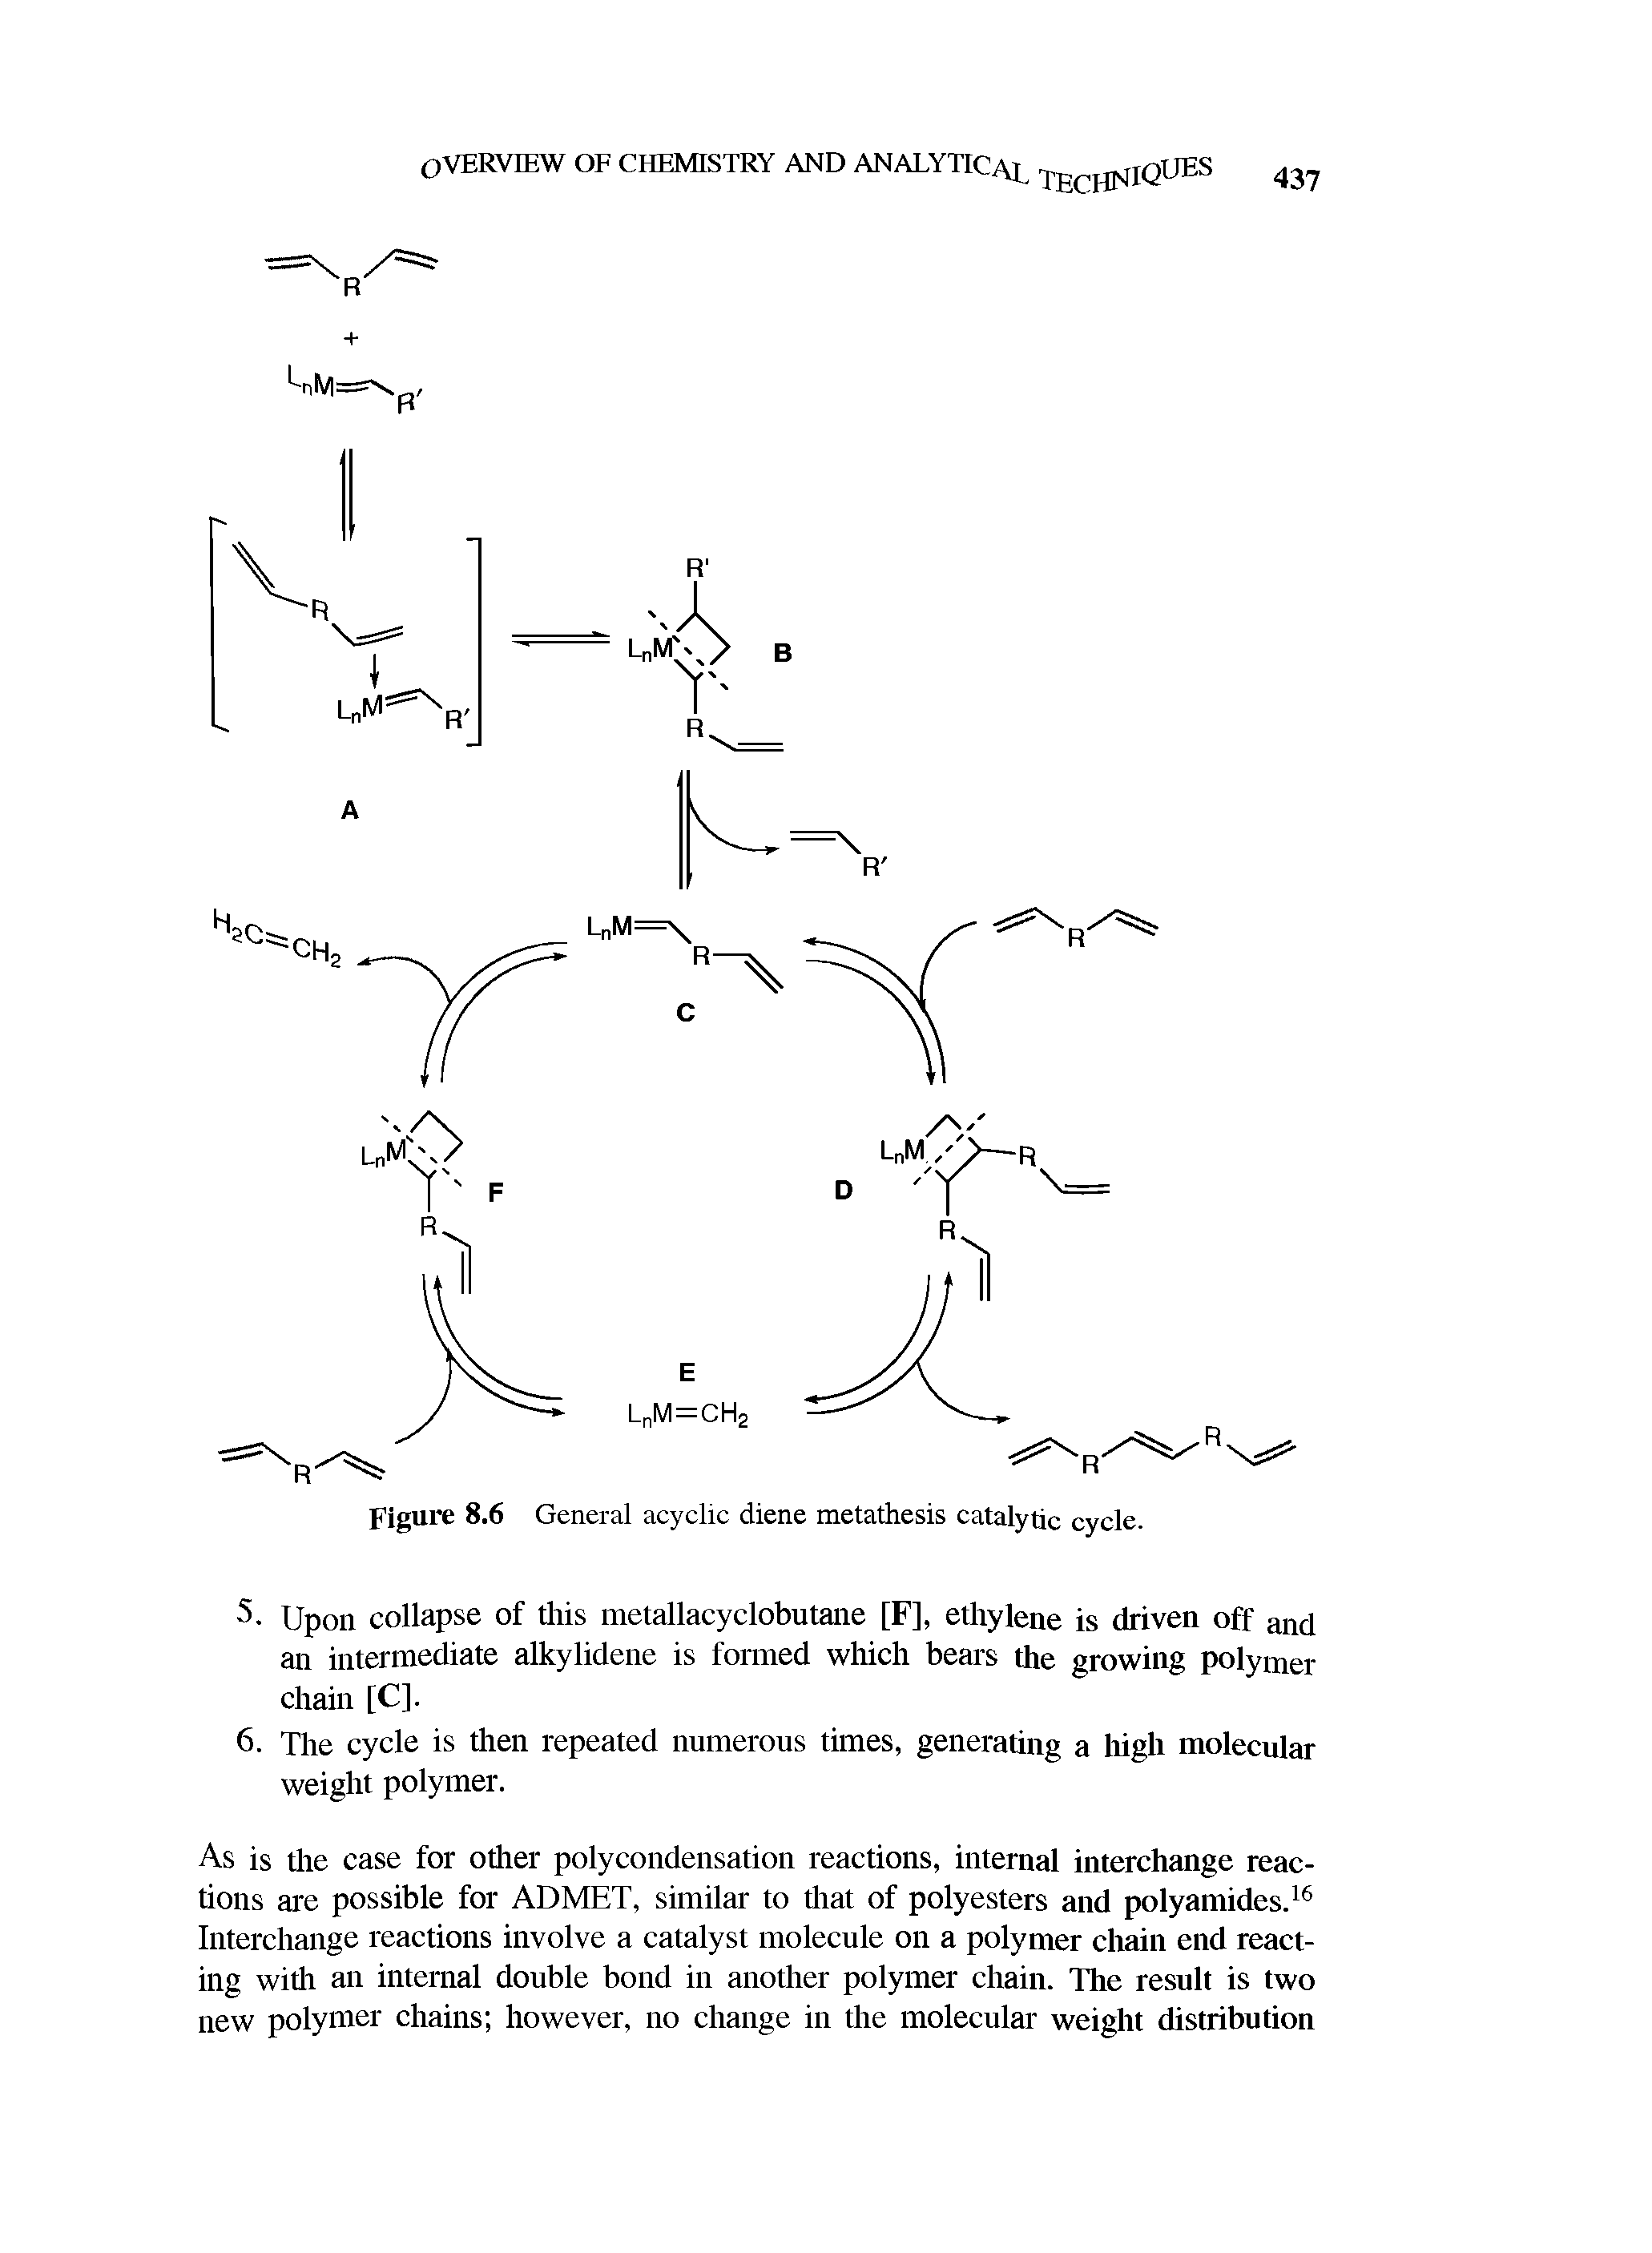 Figure 8.6 General acyclic diene metathesis catalytic cycle.